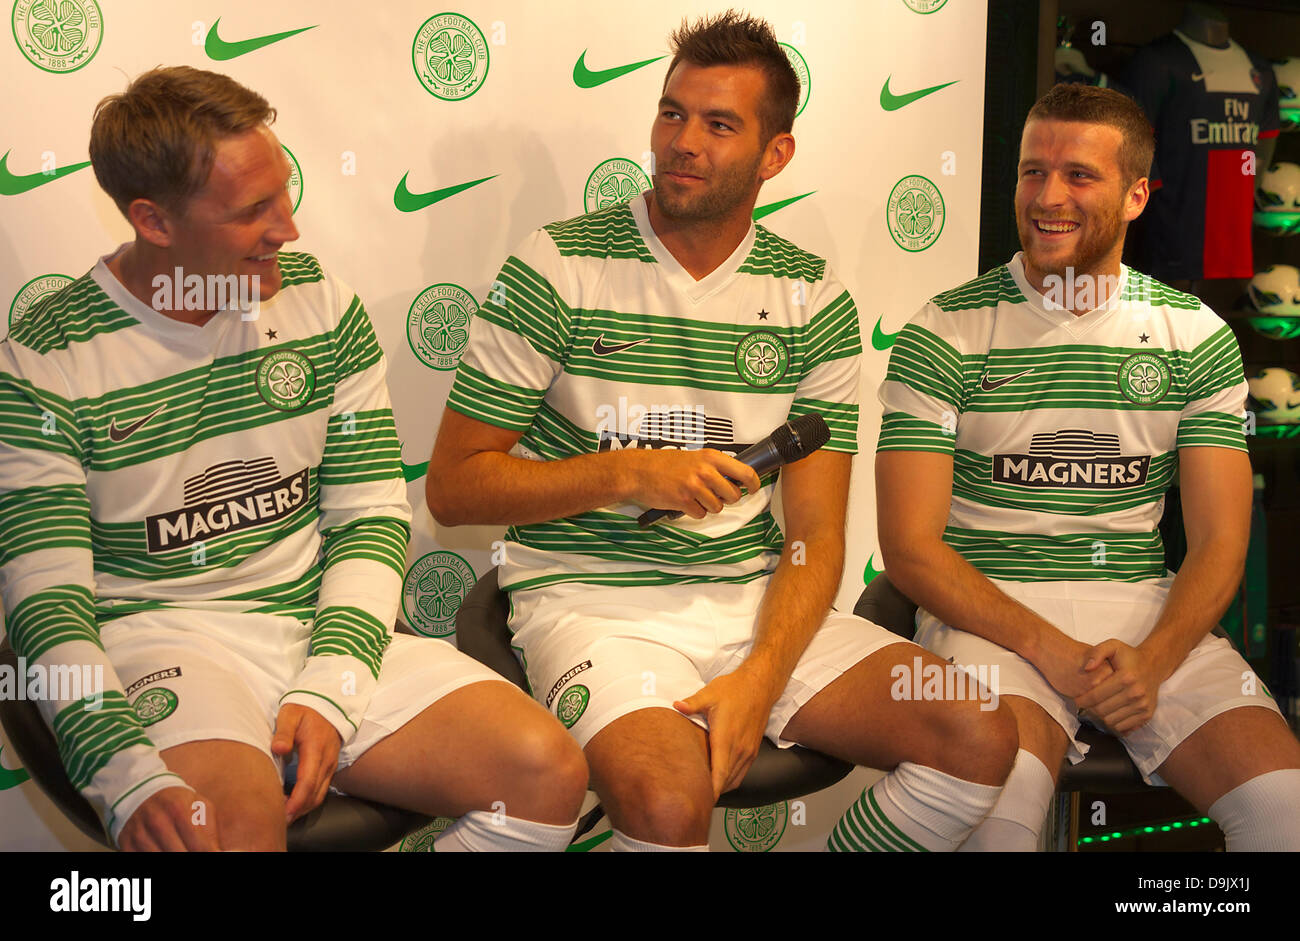 Celtic release new 2013/14 home kit